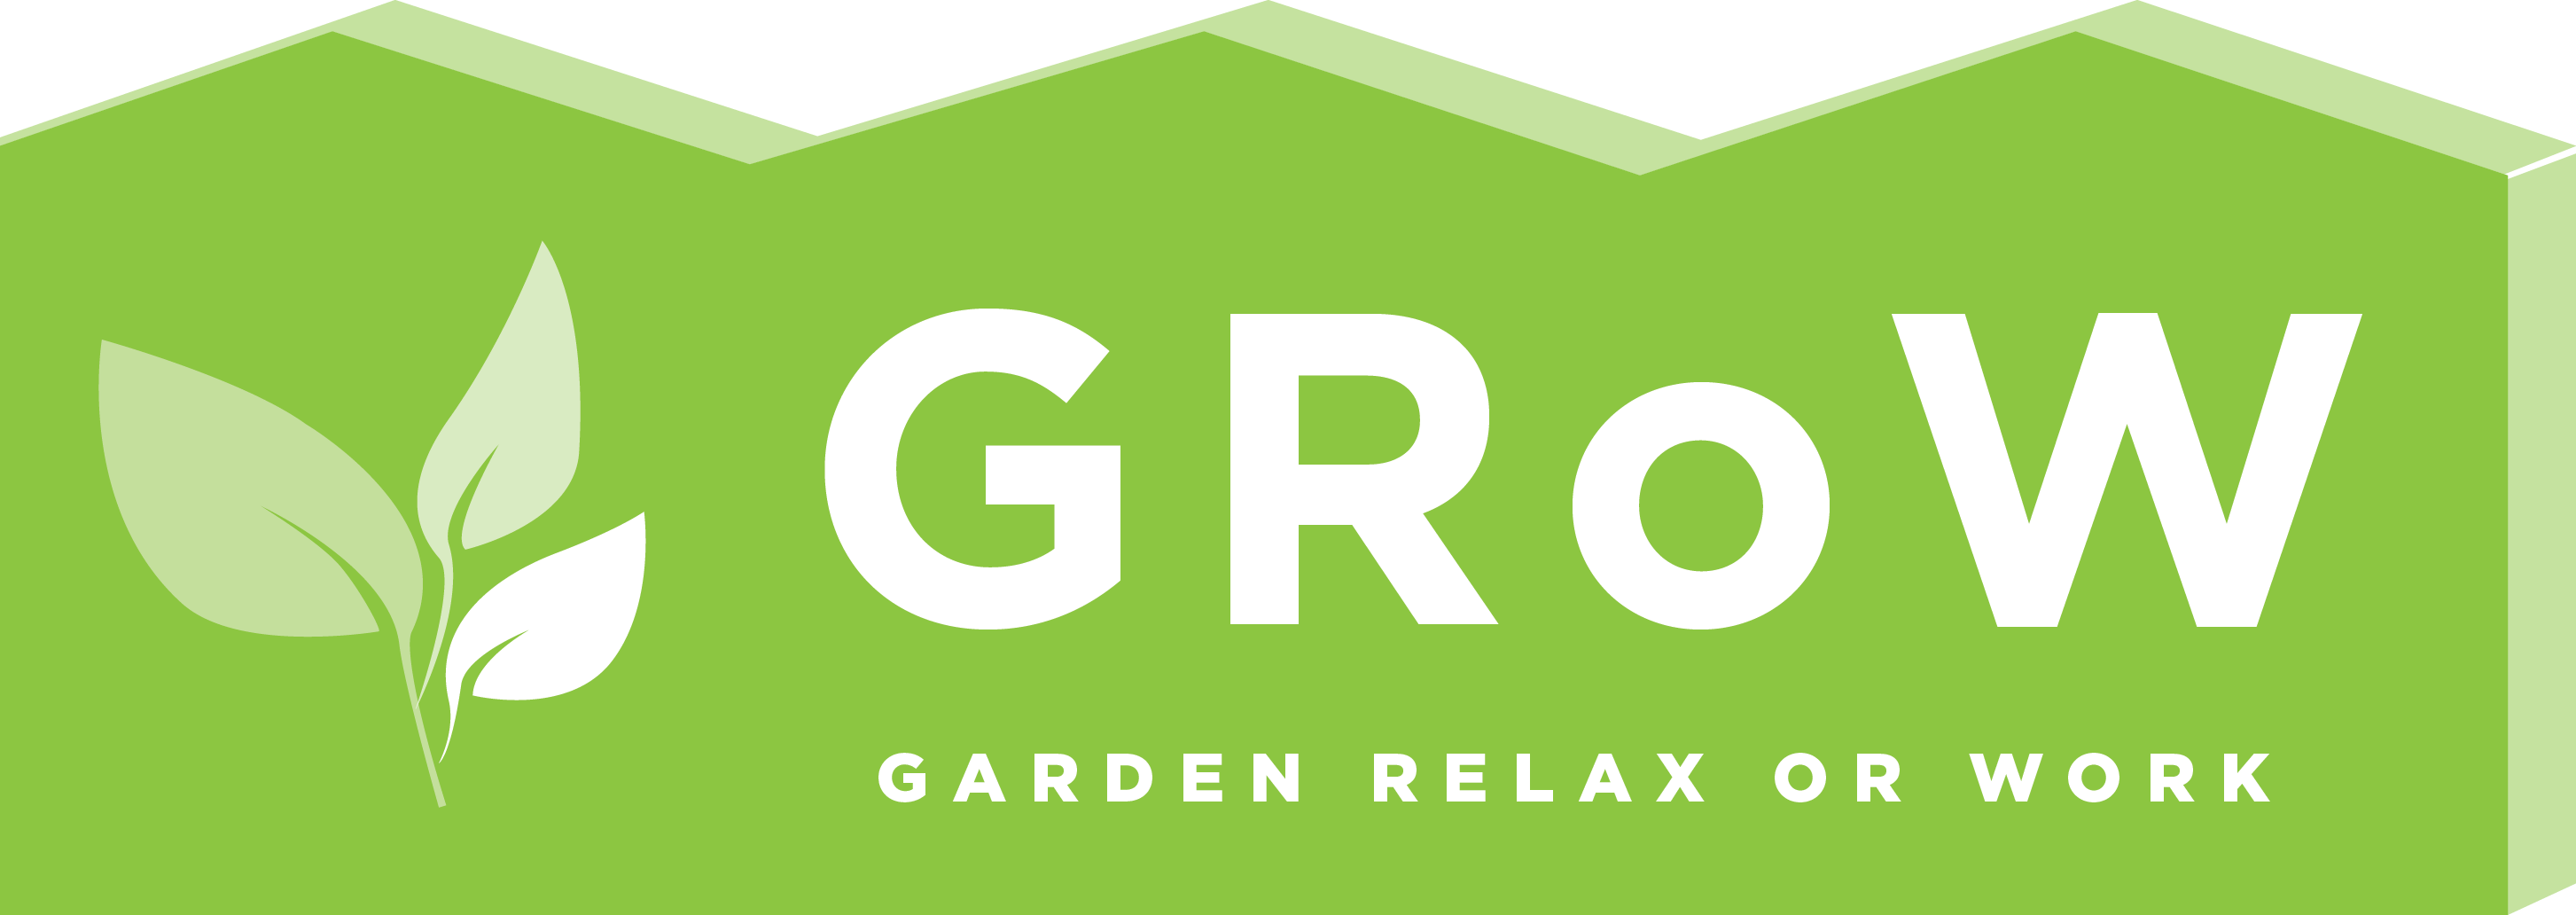 Grow House Logo